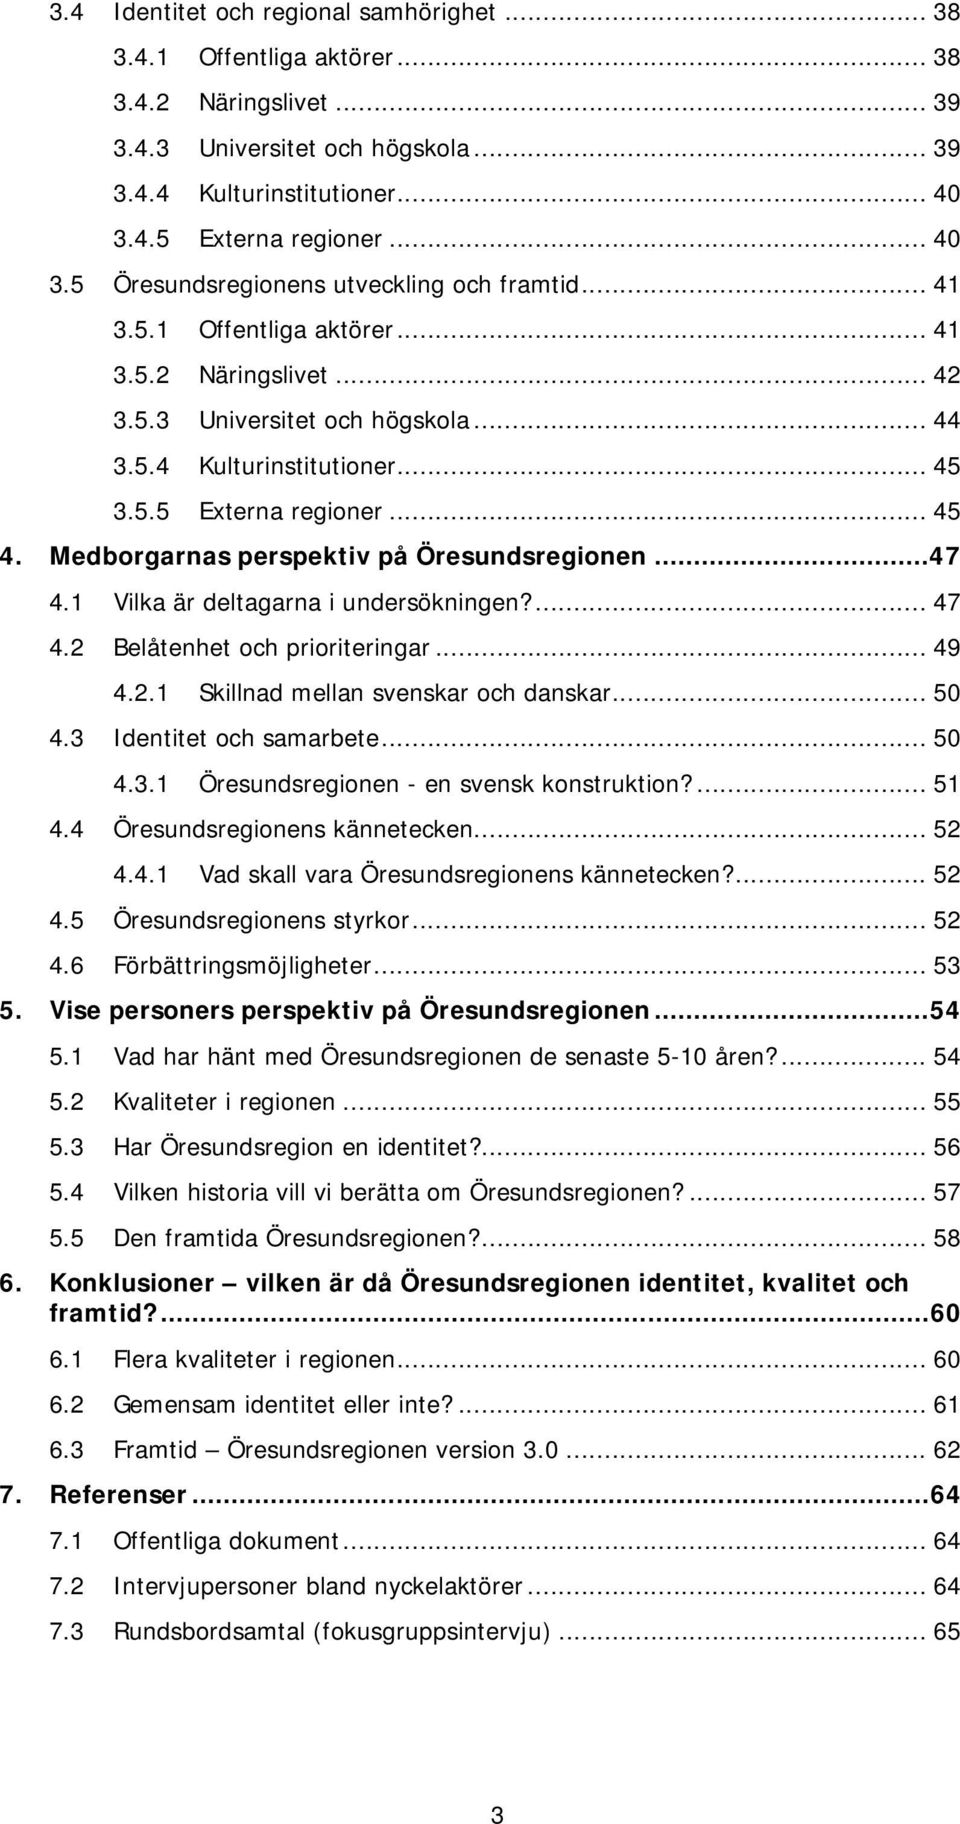 .. 45 3.5.5 Externa regioner... 45 4. Medborgarnas perspektiv på Öresundsregionen...47 4.1 Vilka är deltagarna i undersökningen?... 47 4.2 Belåtenhet och prioriteringar... 49 4.2.1 Skillnad mellan svenskar och danskar.